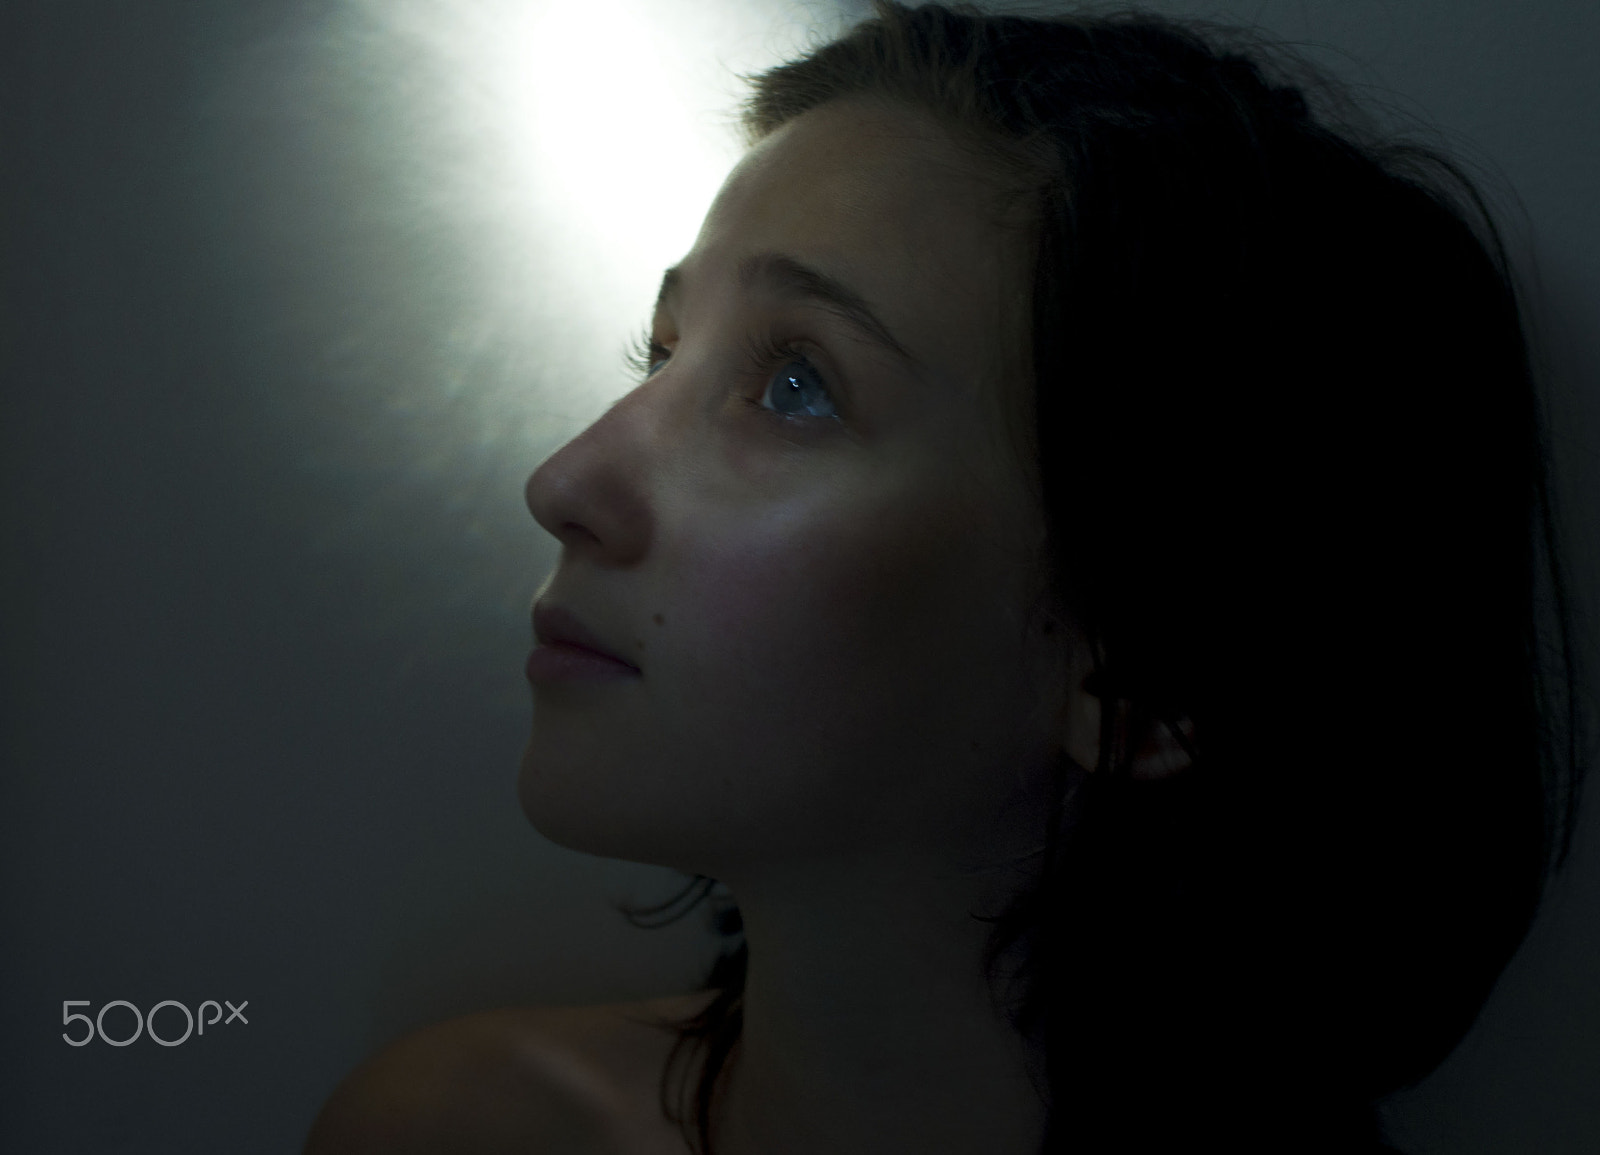 AF Zoom-Nikkor 35-70mm f/2.8 sample photo. Girl looks up towards light photography